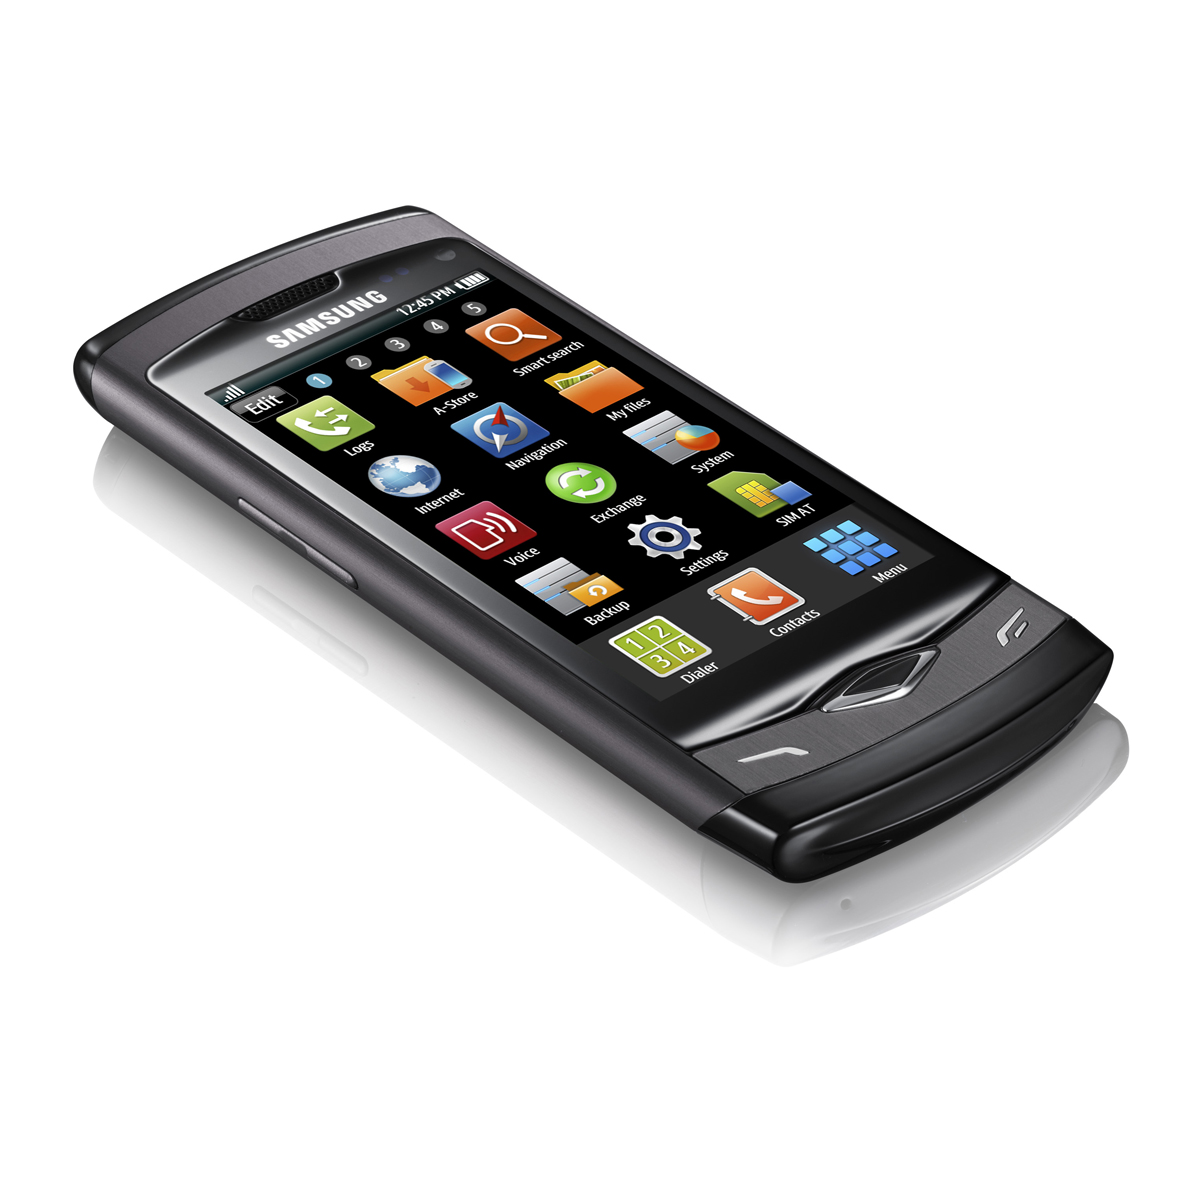 Samsung Wave 3 (S8600), smartphone con Bada 2.0